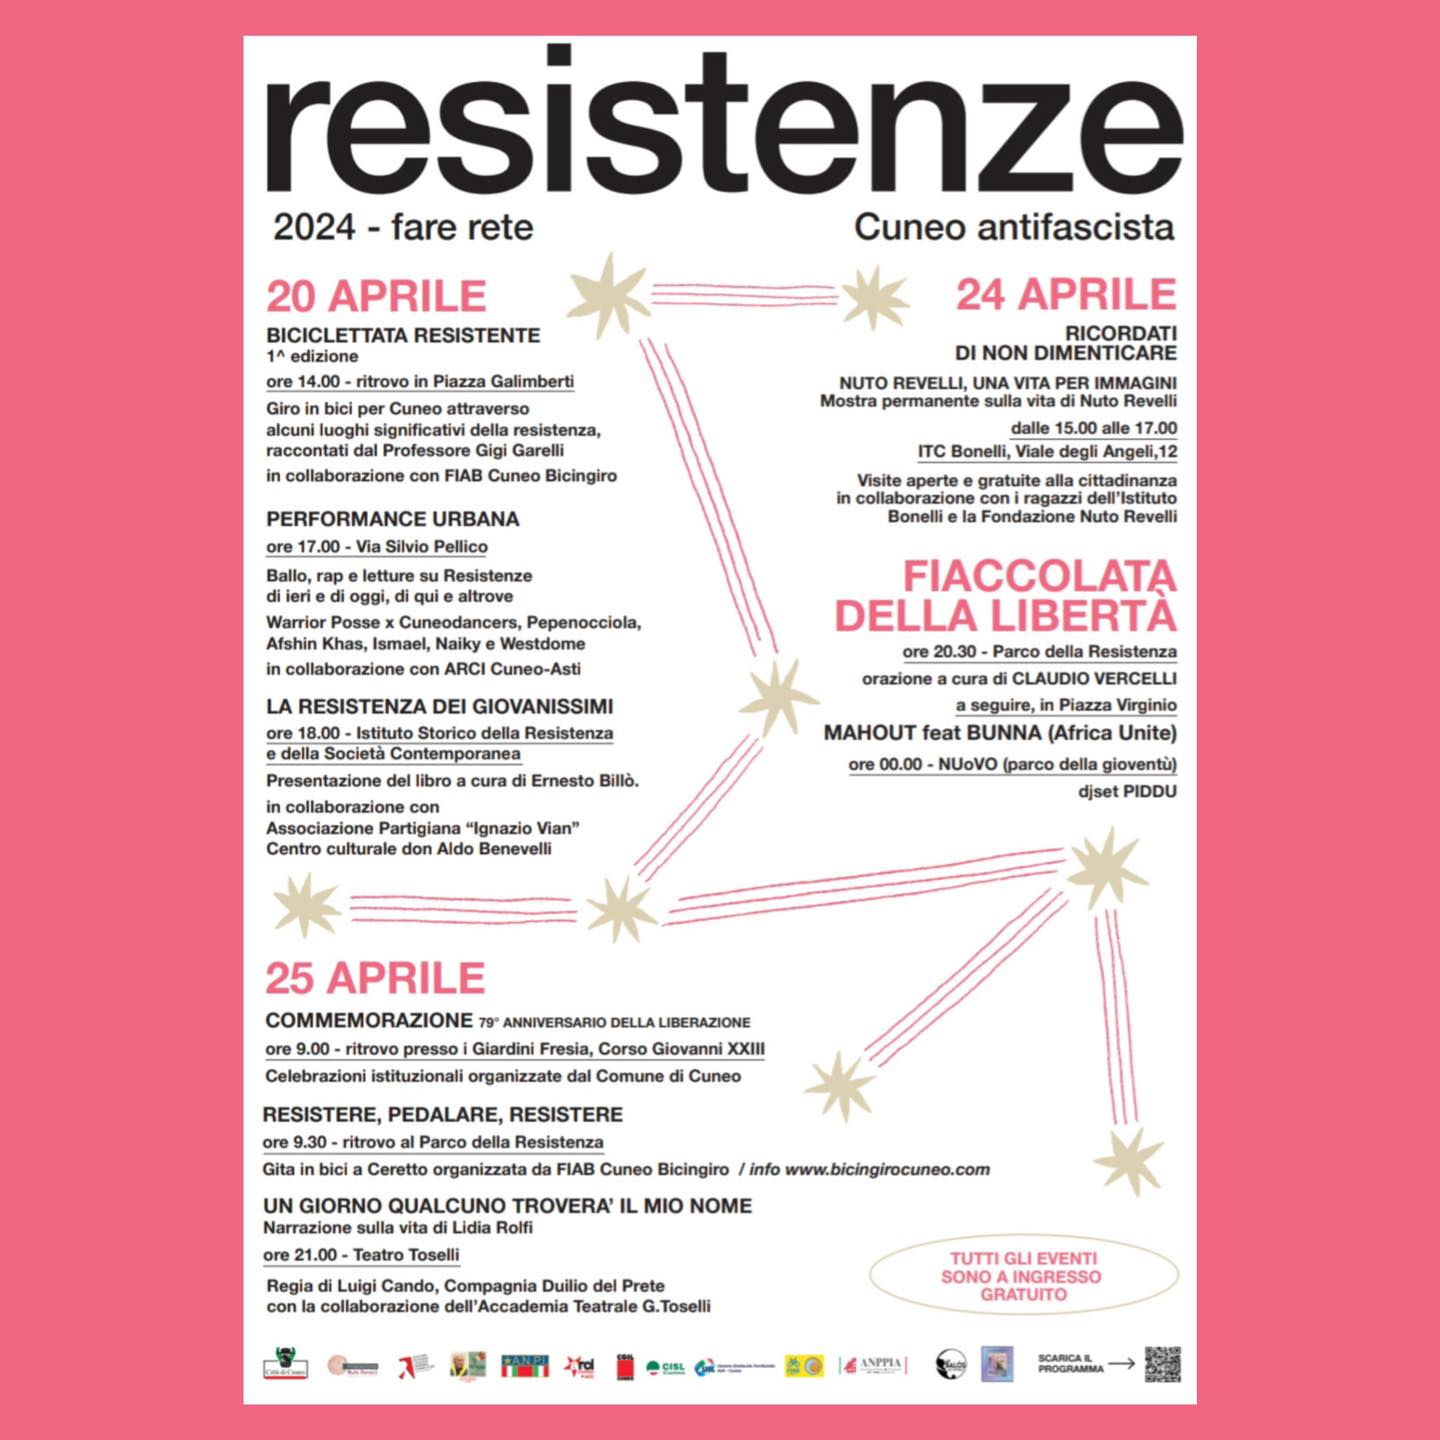 Resistenze Cuneo Antifascista - Fare Rete 20-24-25 Aprile